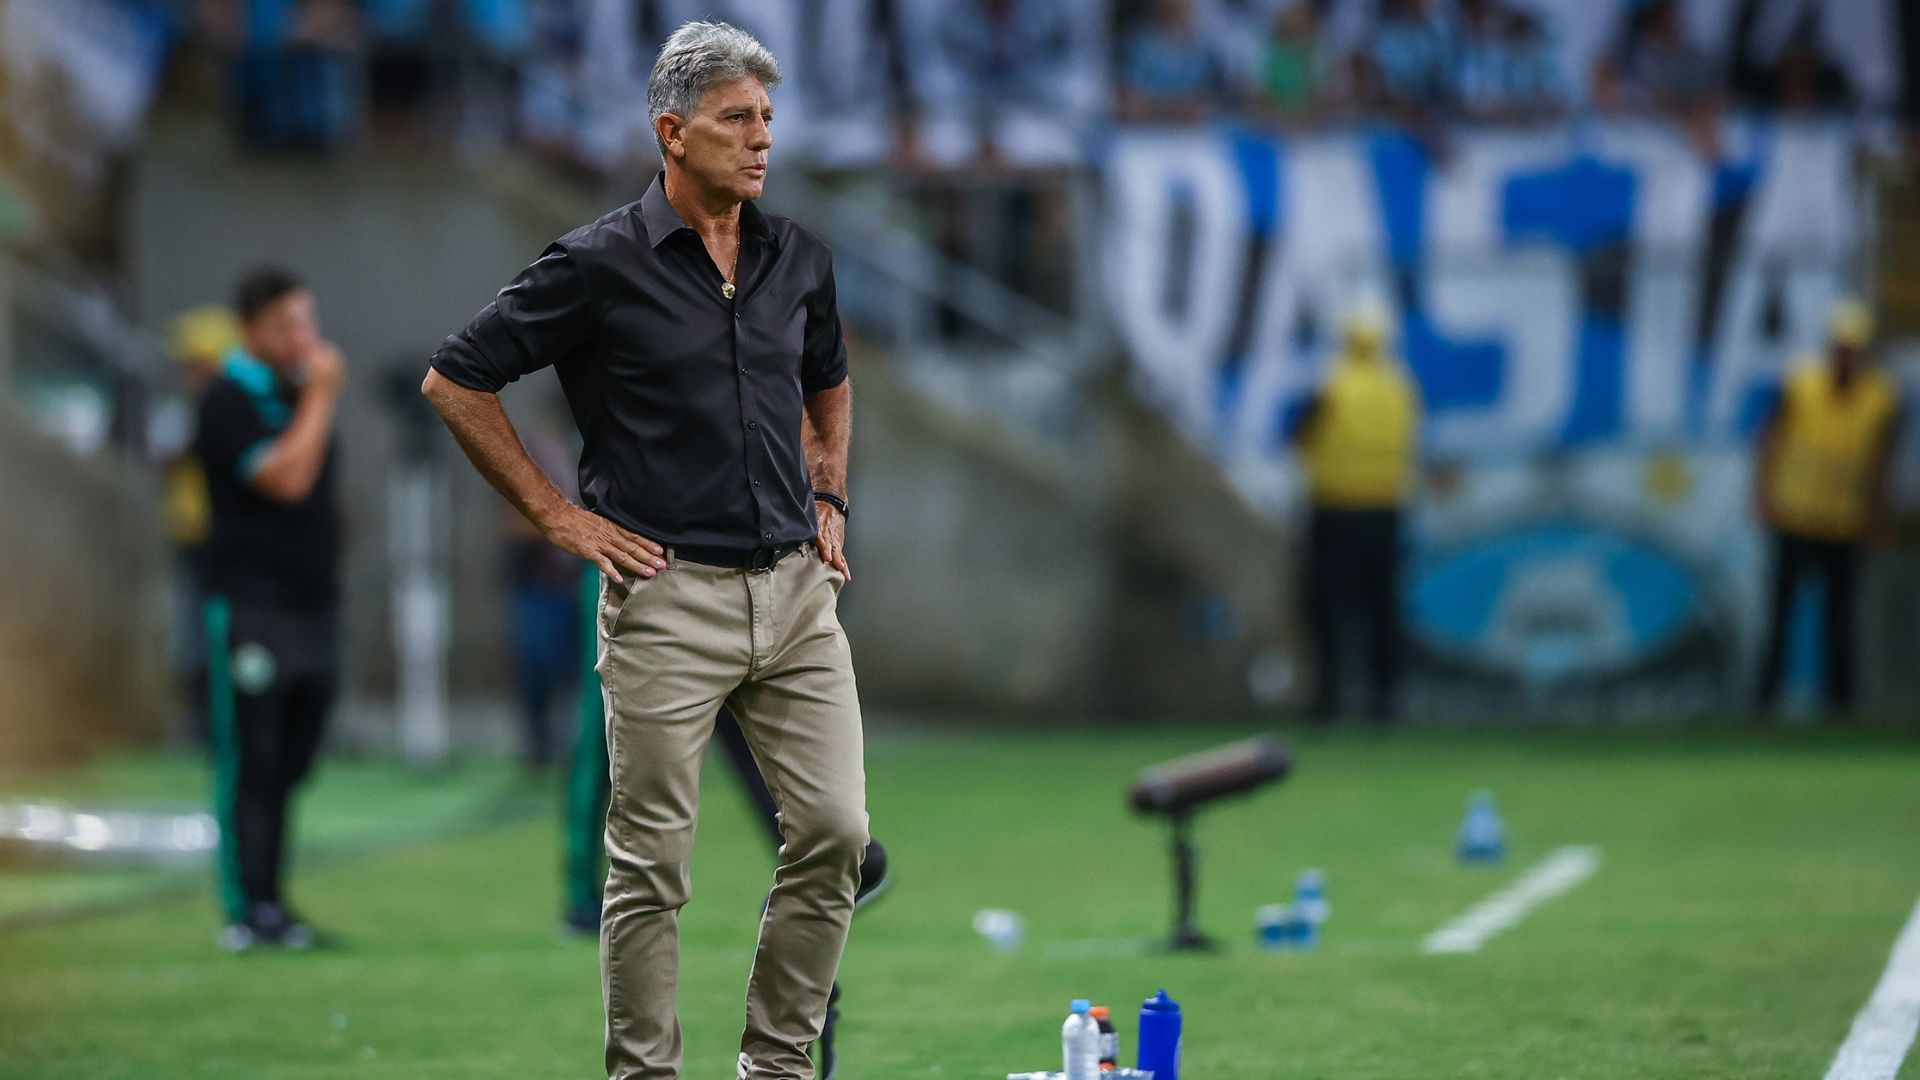 Com o empate, a final será decidida sem nenhuma vantagem na Arena do Grêmio (Crédito: Lucas Uebel / Grêmio)